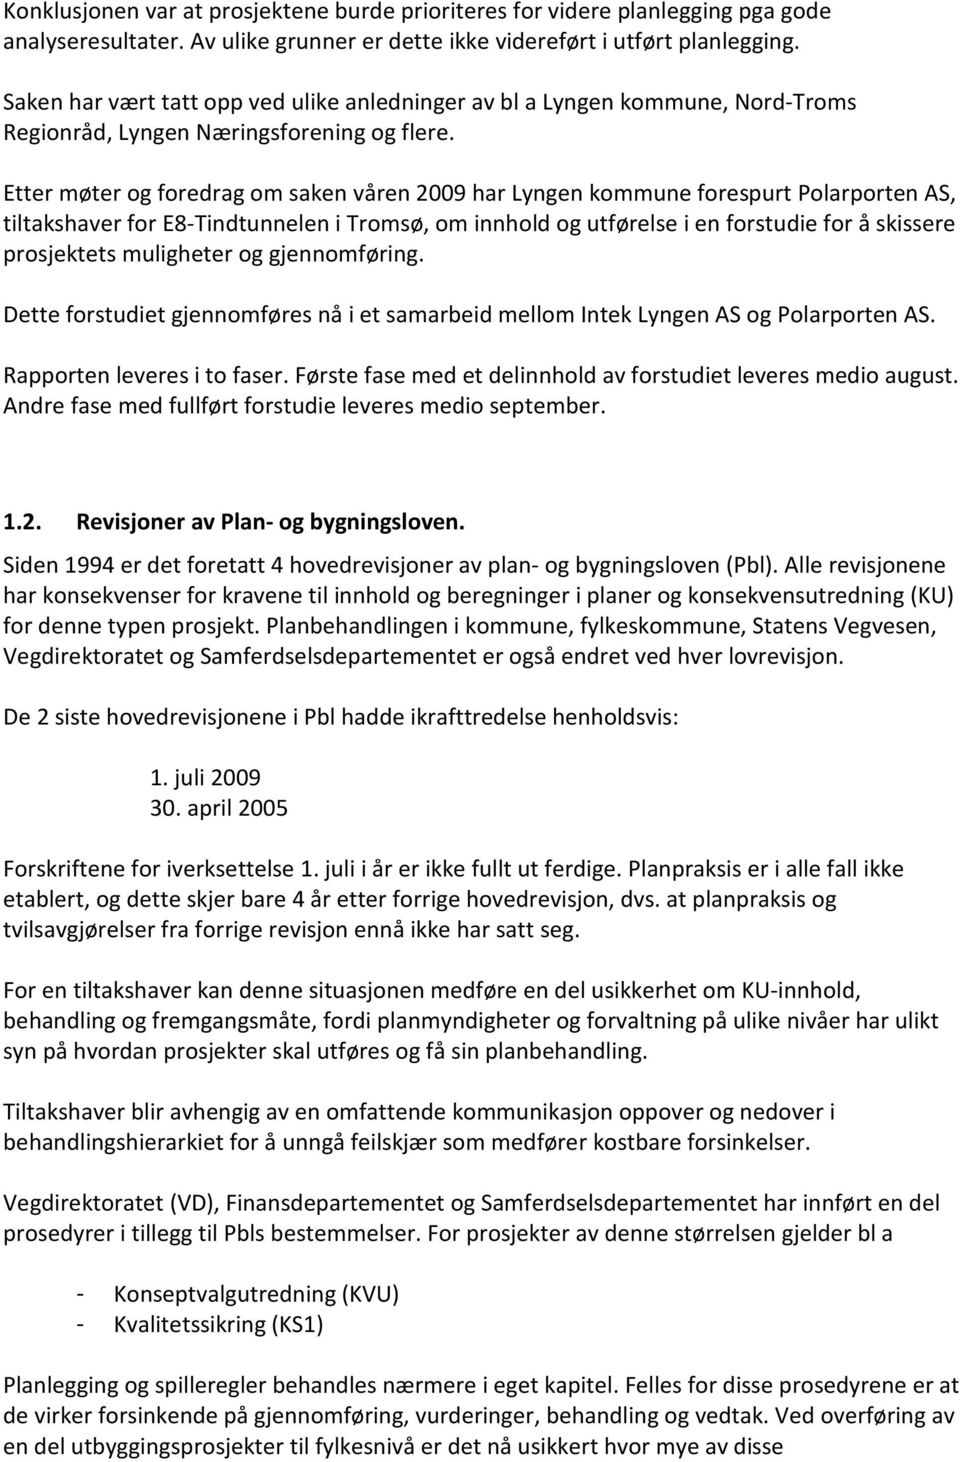 Etter møter og foredrag om saken våren 2009 har Lyngen kommune forespurt Polarporten AS, tiltakshaver for E8-Tindtunnelen i Tromsø, om innhold og utførelse i en forstudie for å skissere prosjektets